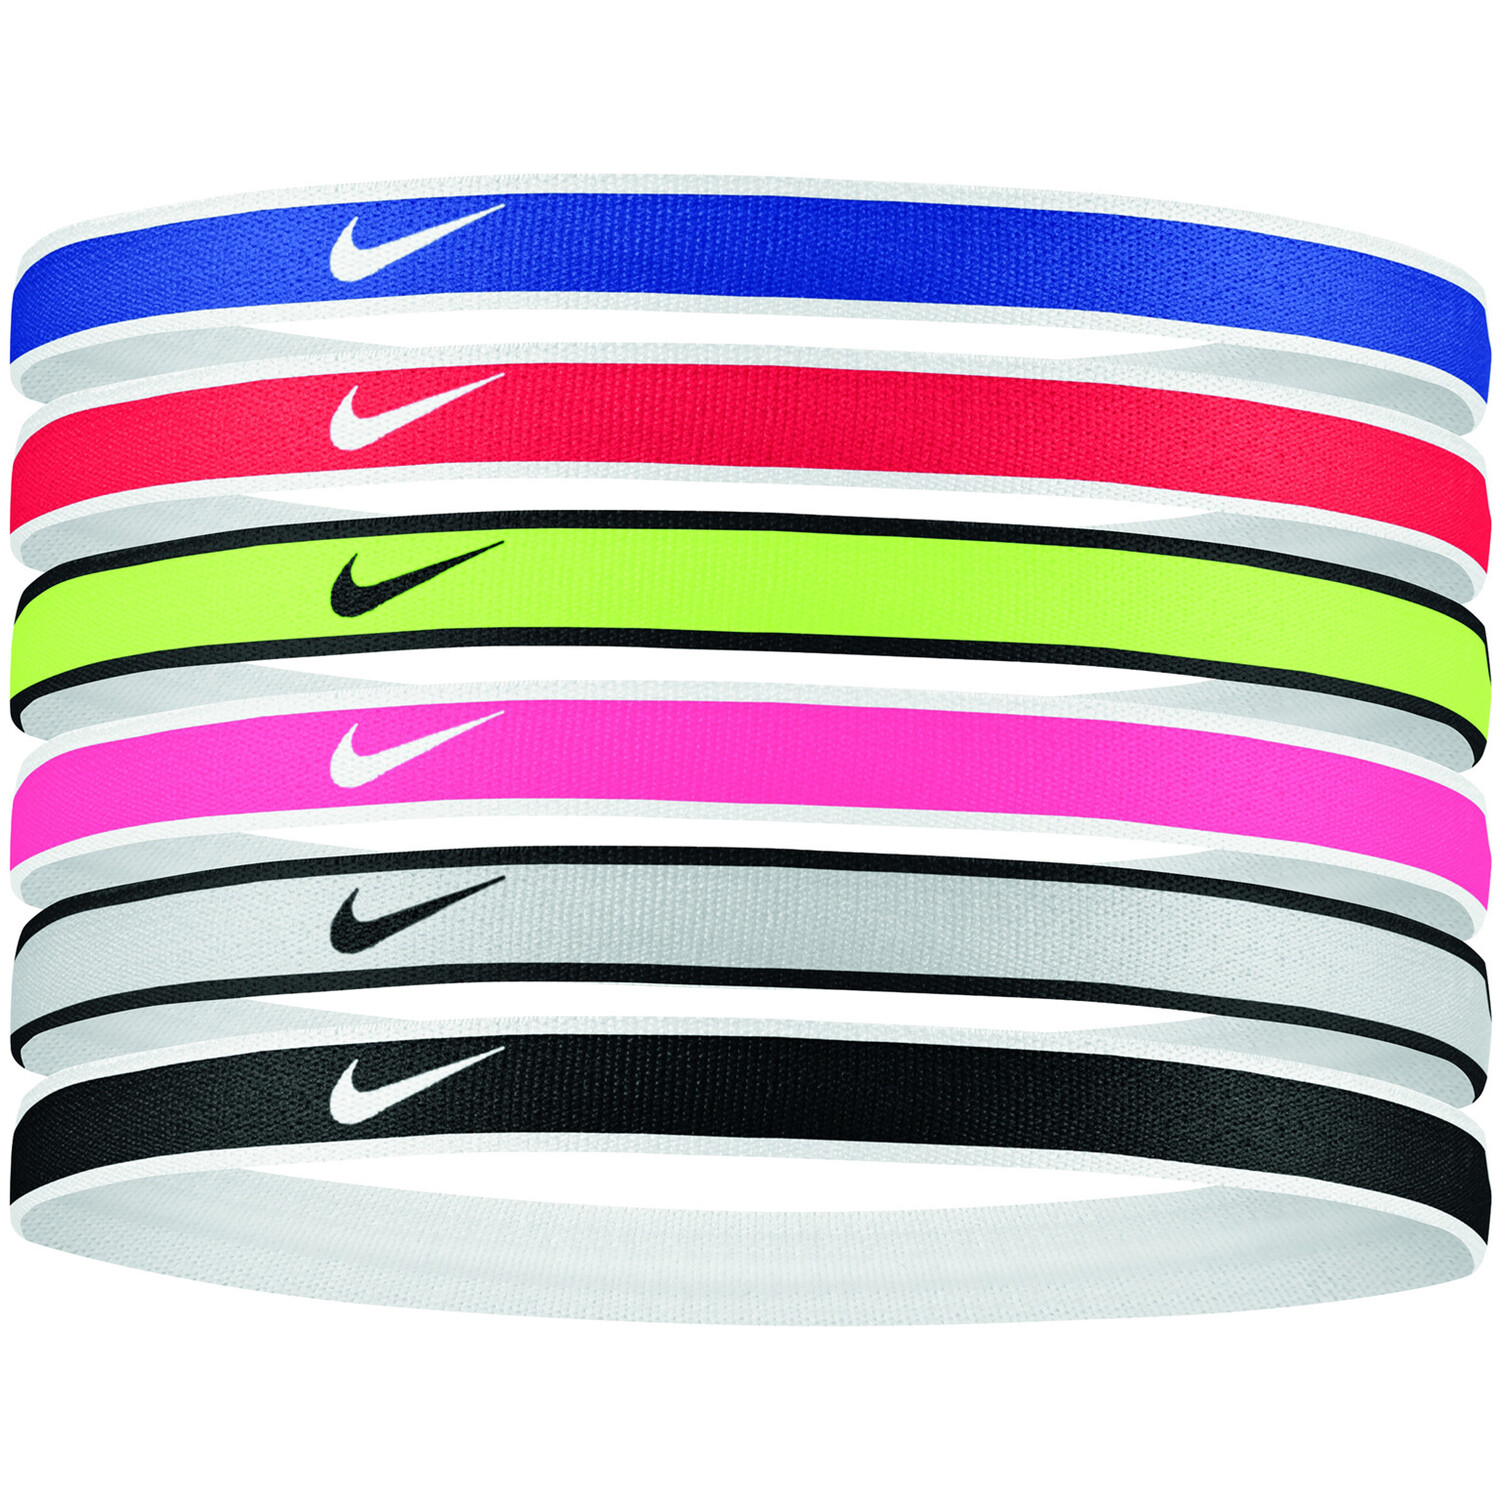 Bandeaux imprimés Nike (lot de 6). Nike FR